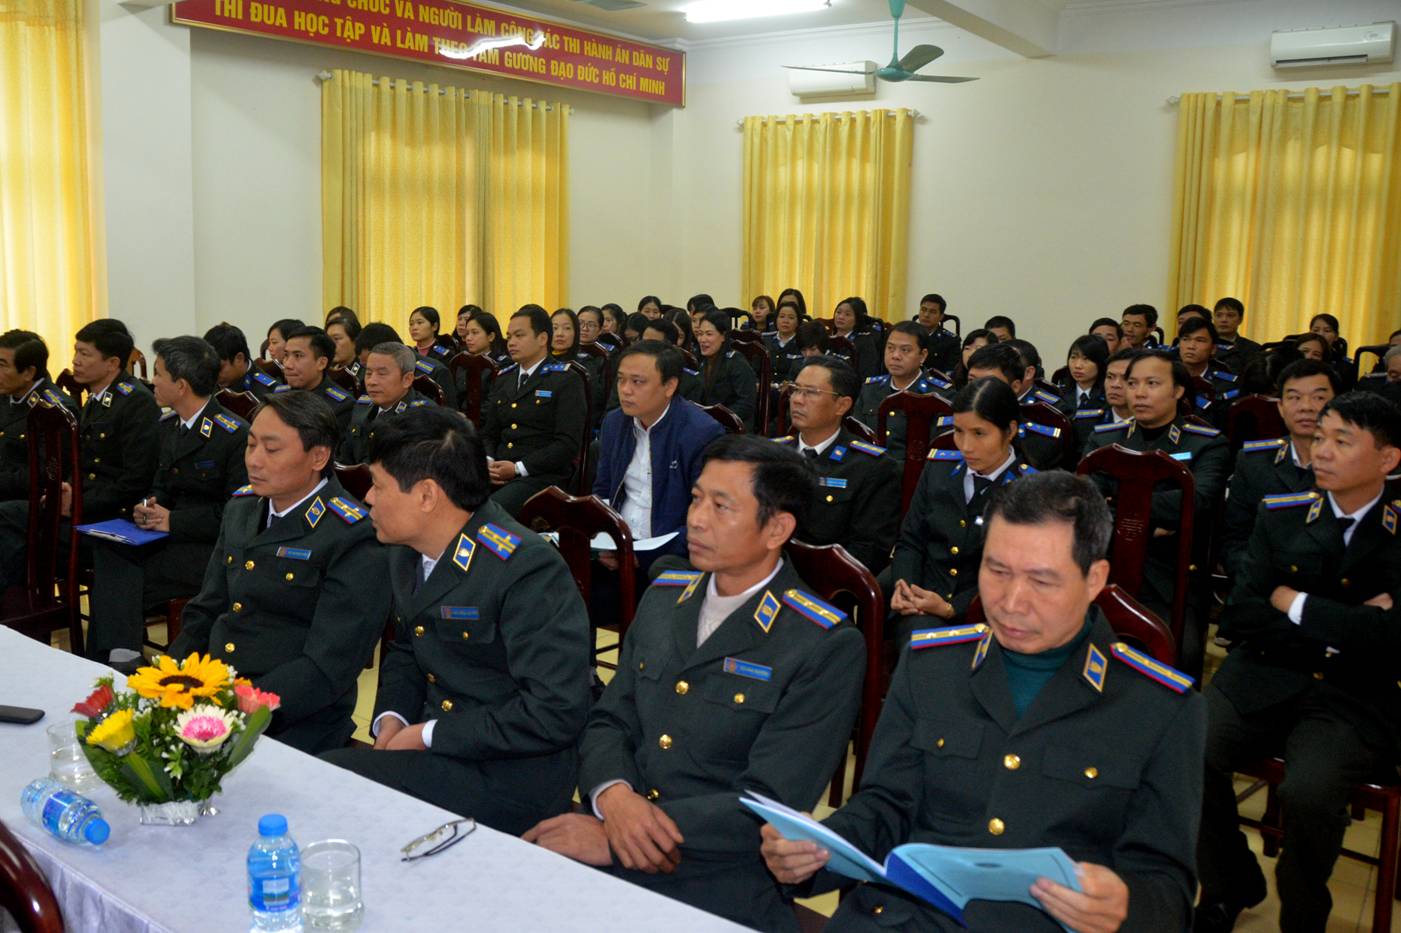 Cục Thi hành án dân sự tỉnh Hà Nam tổ chức Hội nghị triển khai công tác THADS, hành chính năm 2019